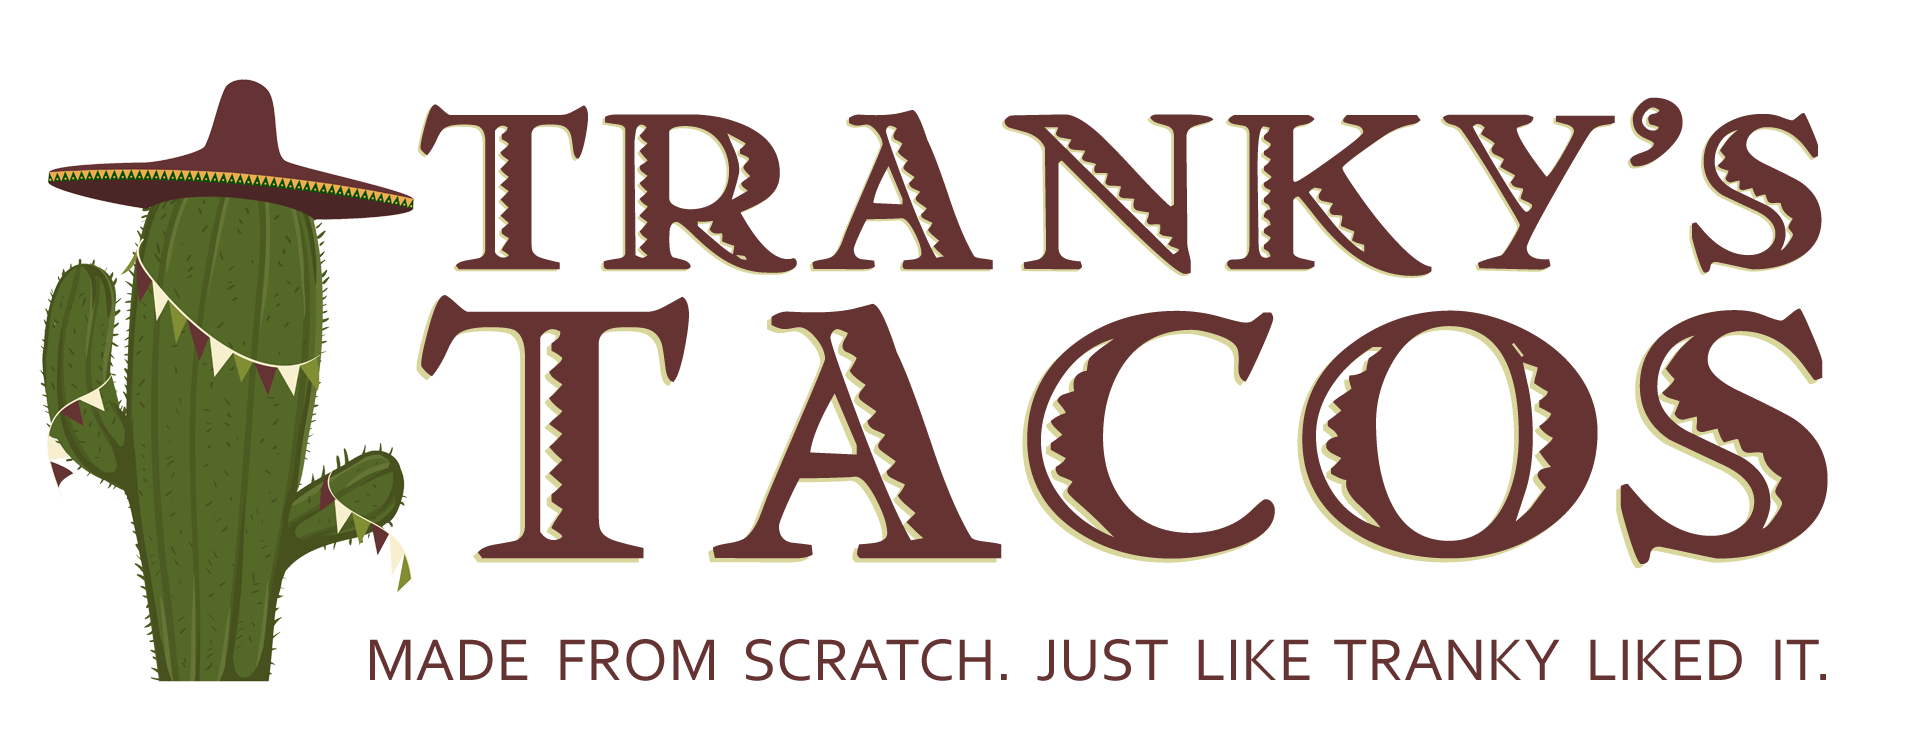 Tranky's Tacos